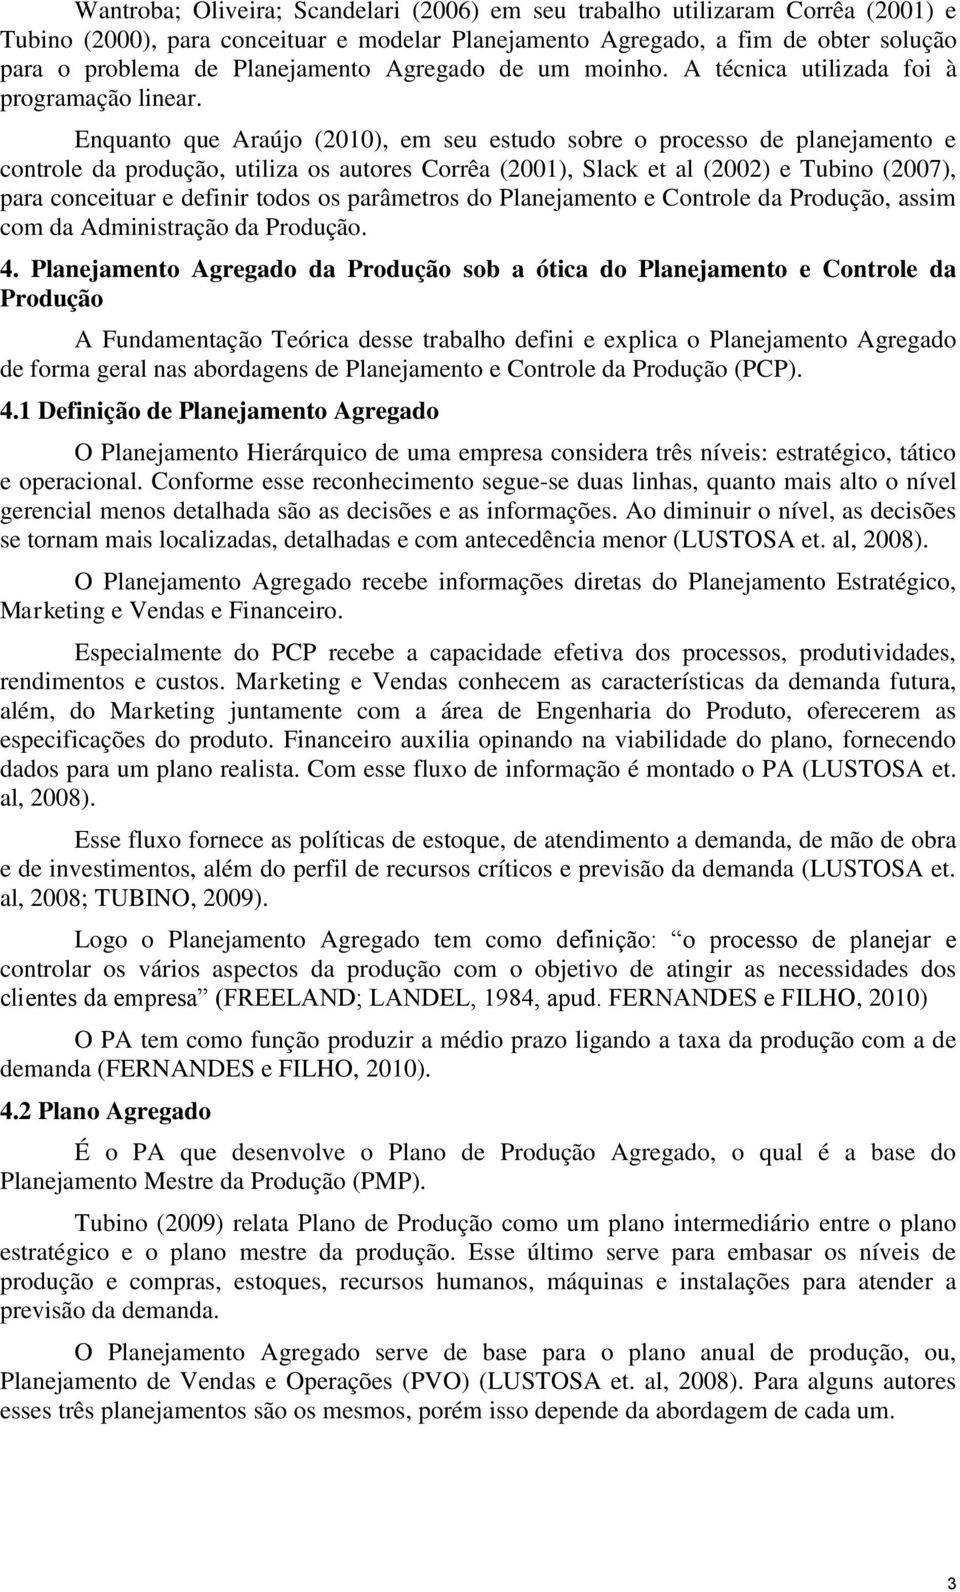 Enquanto que Araújo (2010), em seu estudo sobre o processo de planejamento e controle da produção, utiliza os autores Corrêa (2001), Slack et al (2002) e Tubino (2007), para conceituar e definir